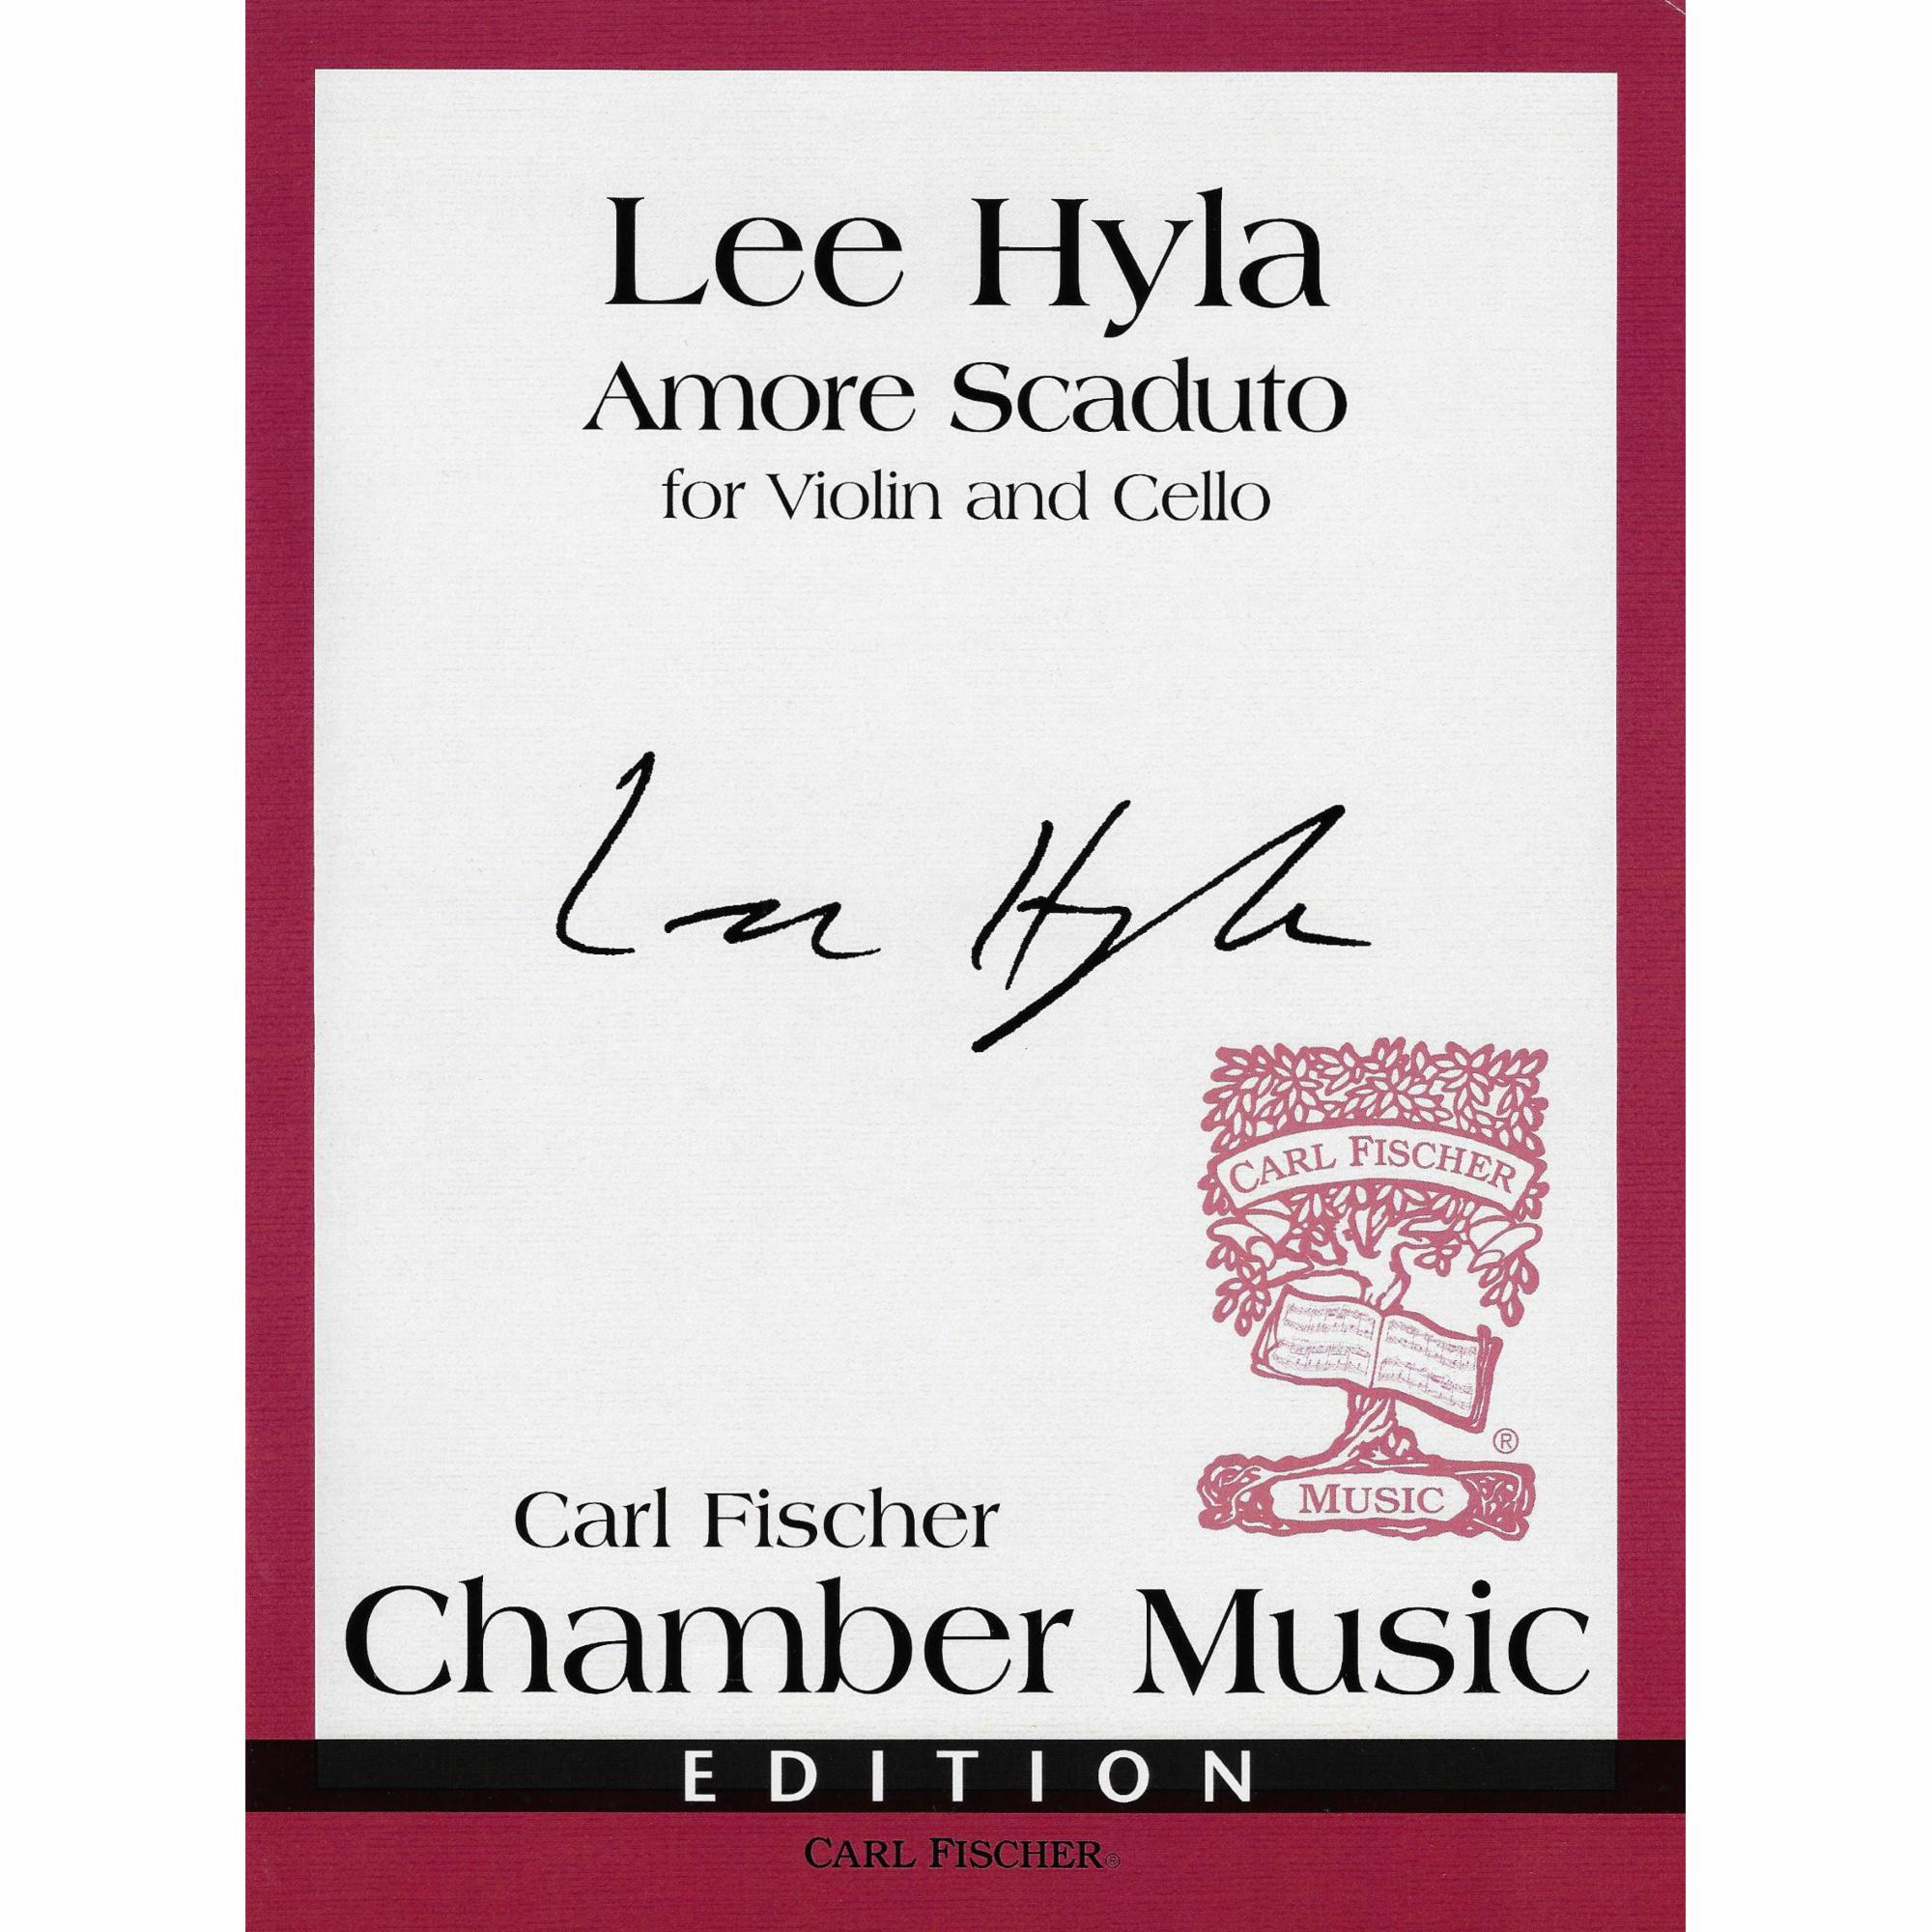 Hyla -- Amore Scaduto for Violin and Cello